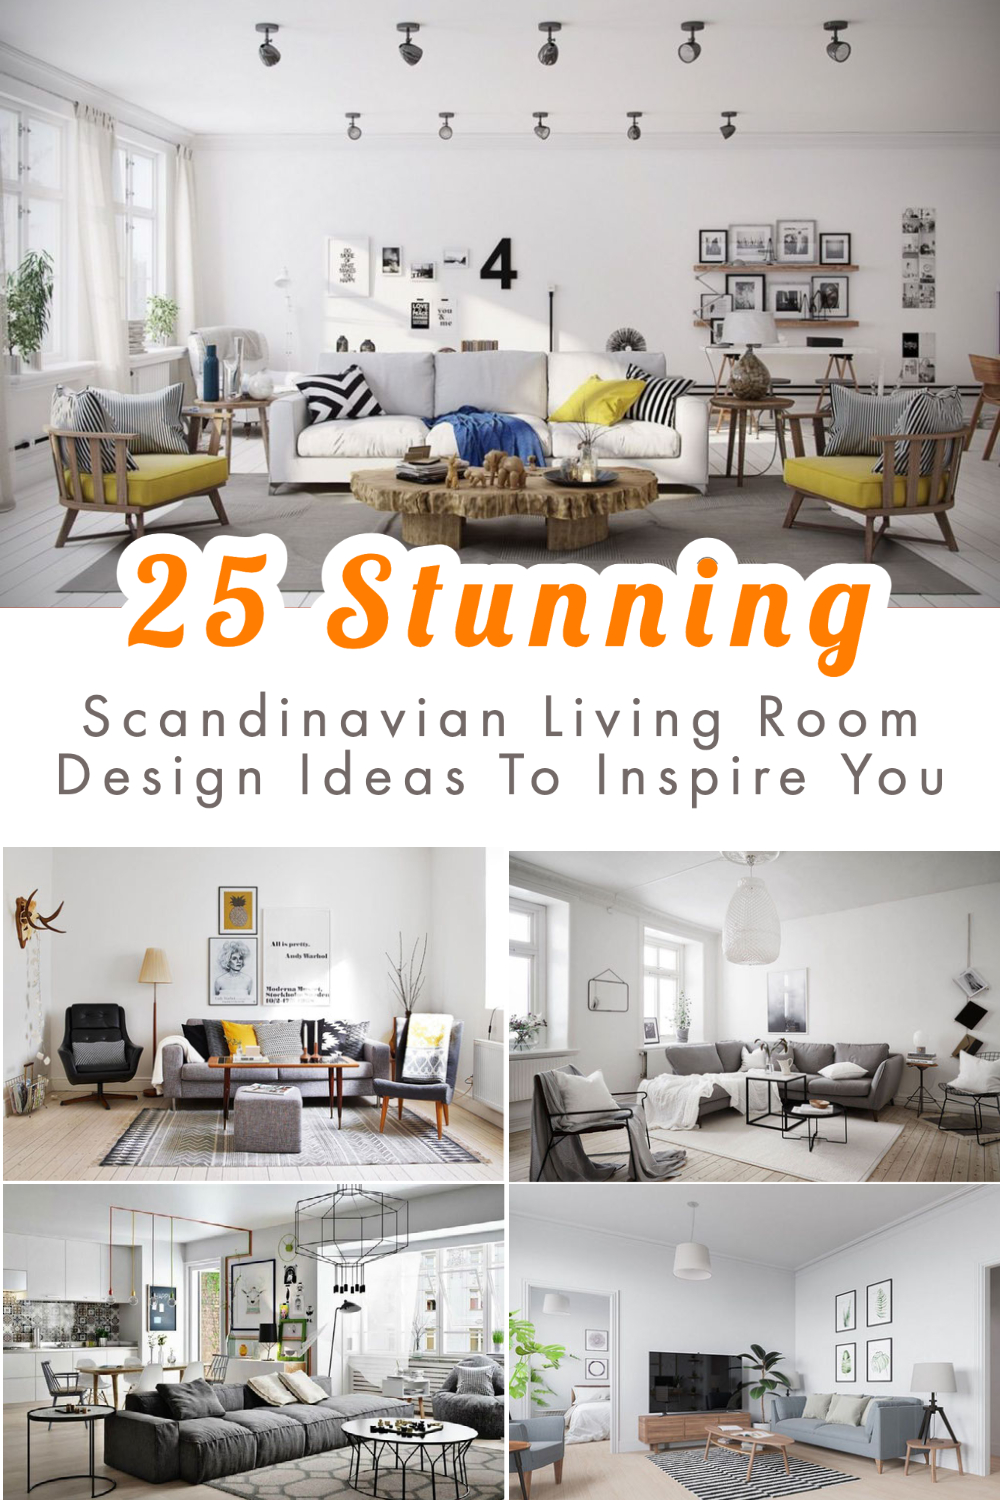 Scandinavian Living Room Design Ideas To Inspire You